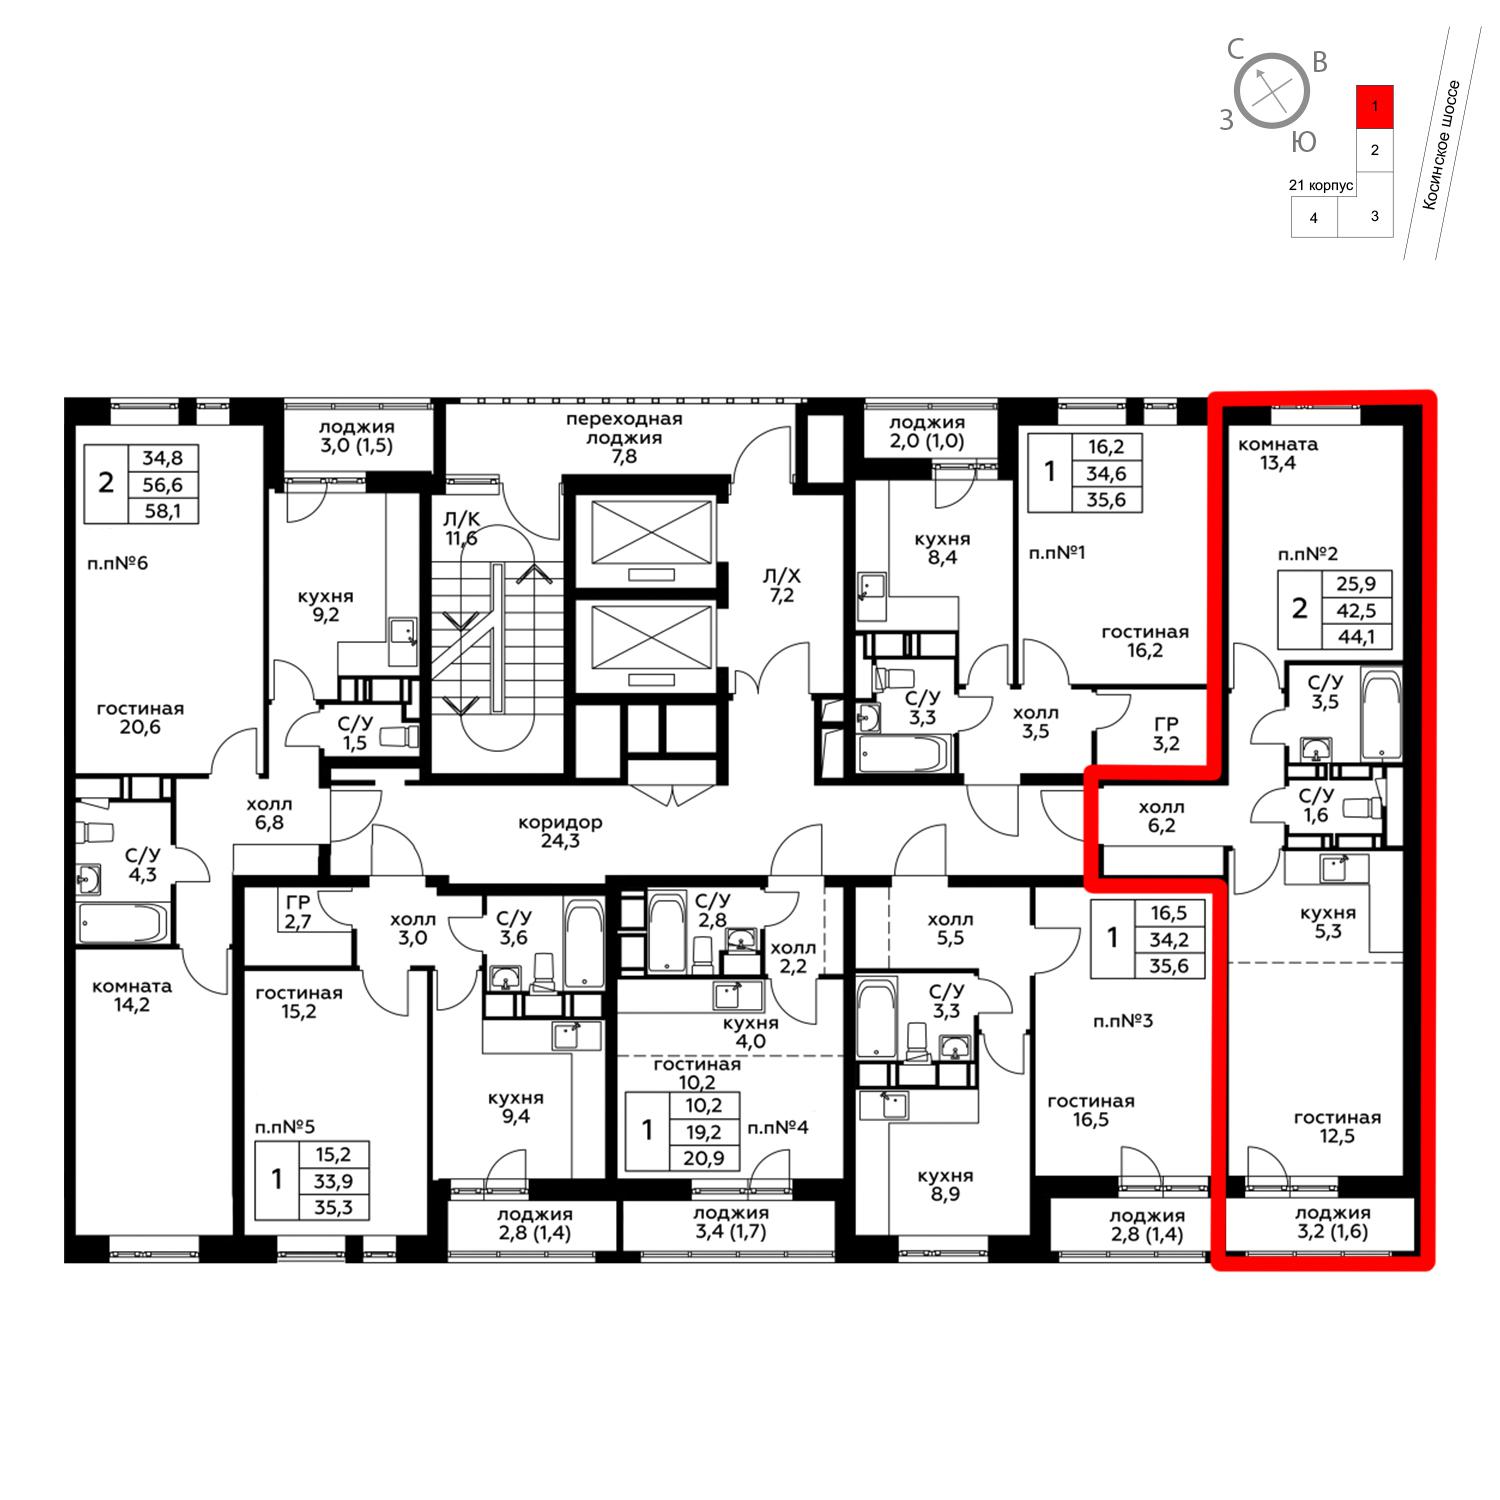 Продаётся 2-комнатная квартира в новостройке 44.4 кв.м. этаж 7/20 за 5 614 380 руб 